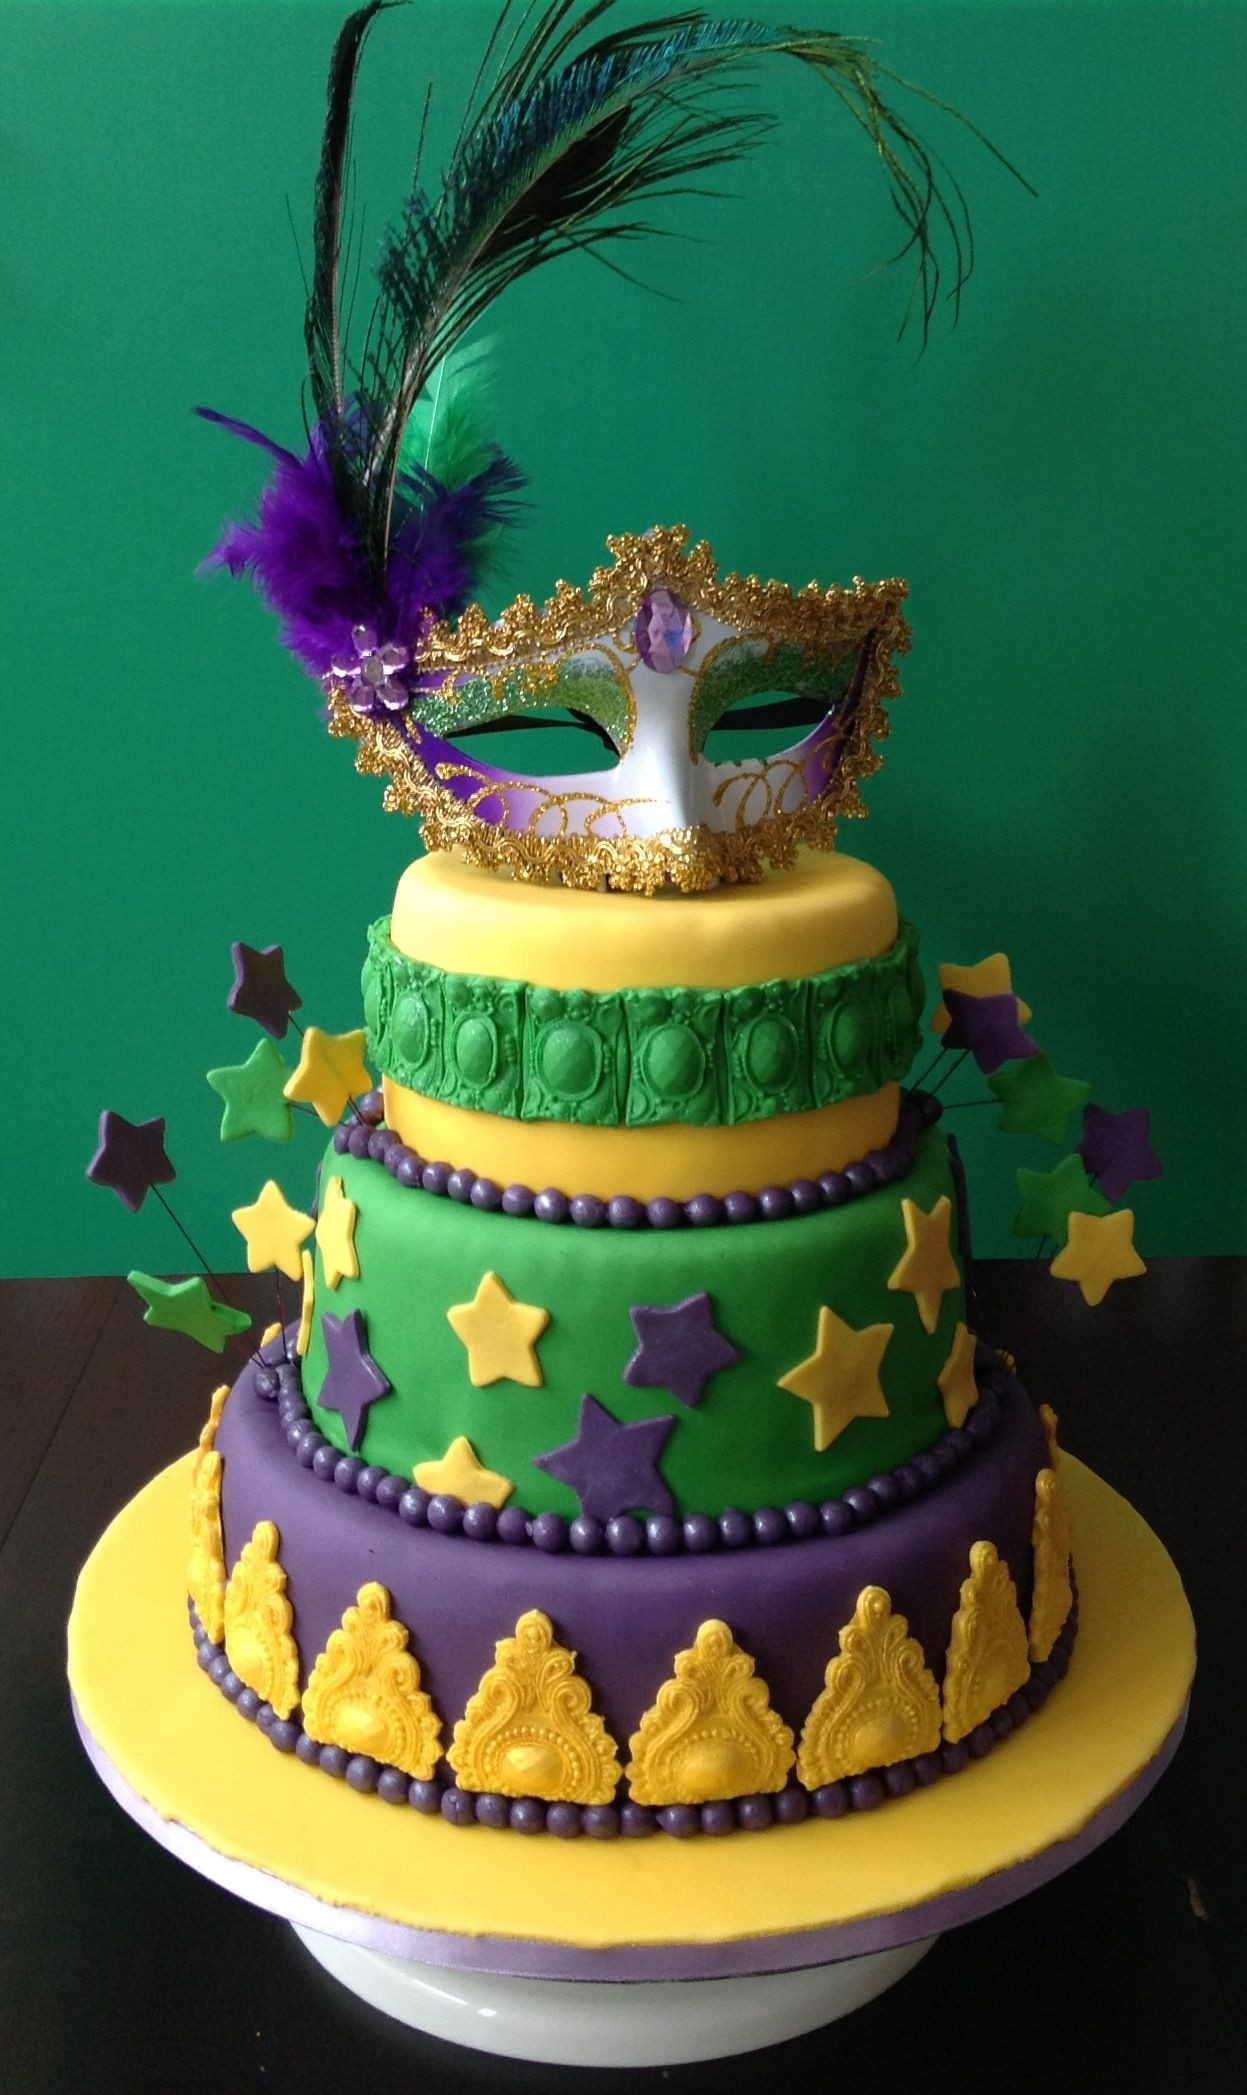 Mardi Gras Birthday Cake
 Mardi gras birthday cake